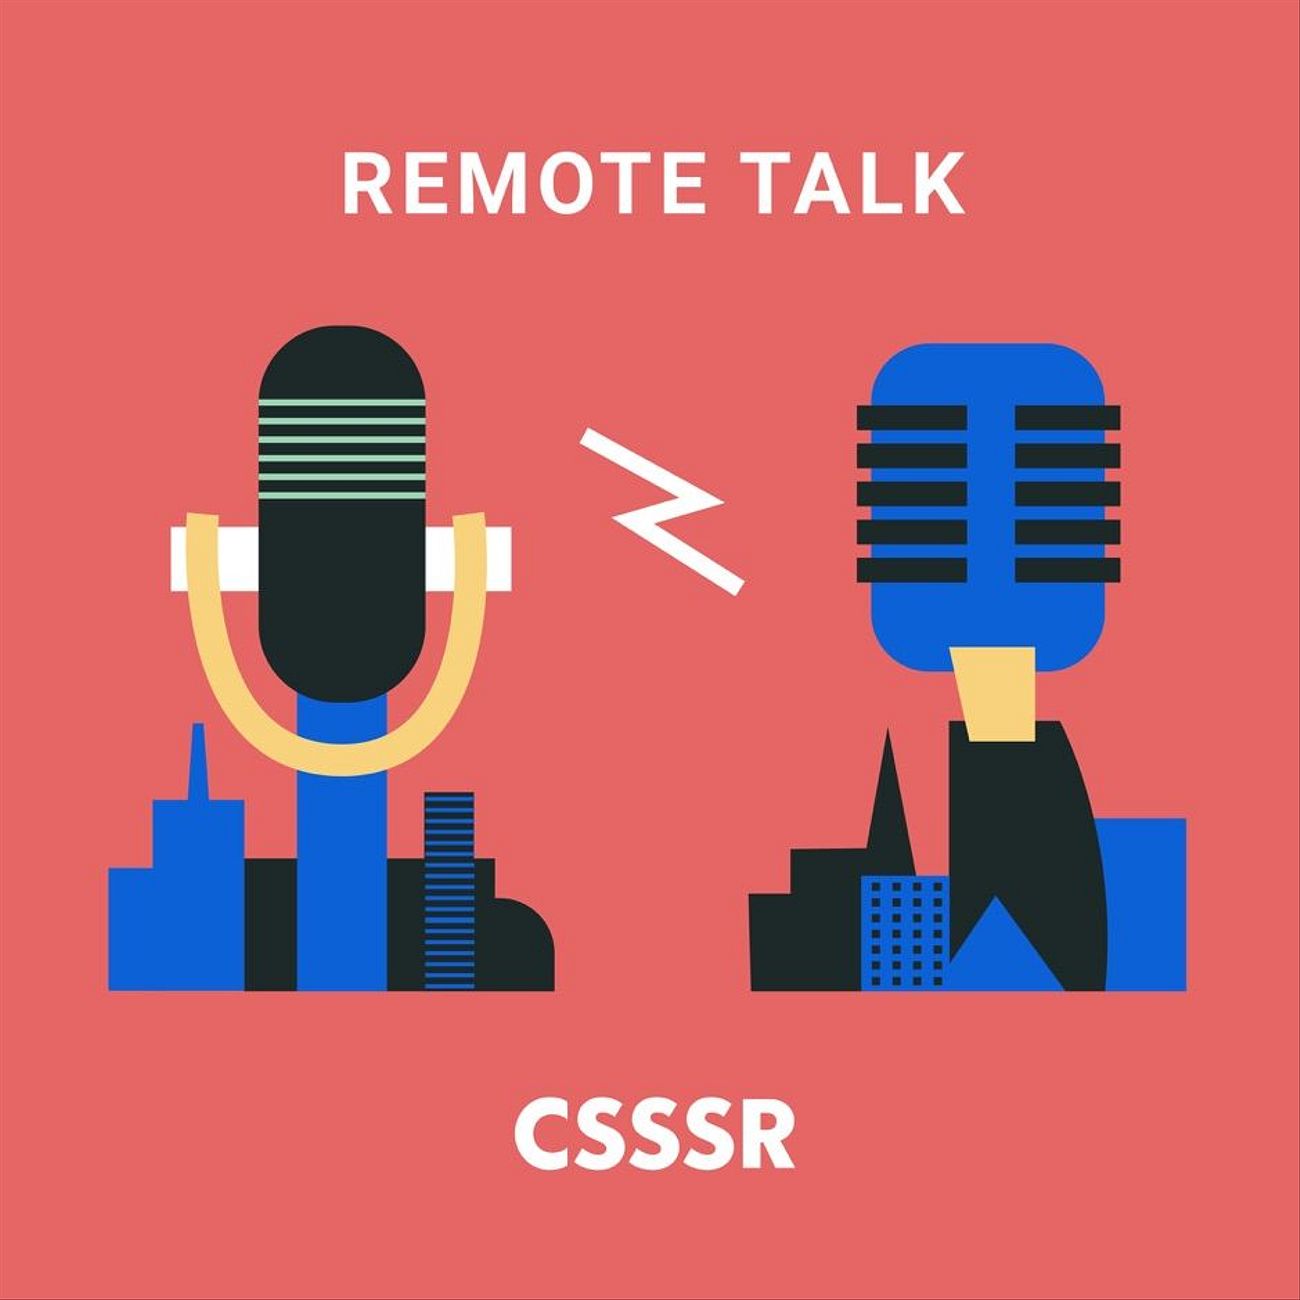 Remote talk